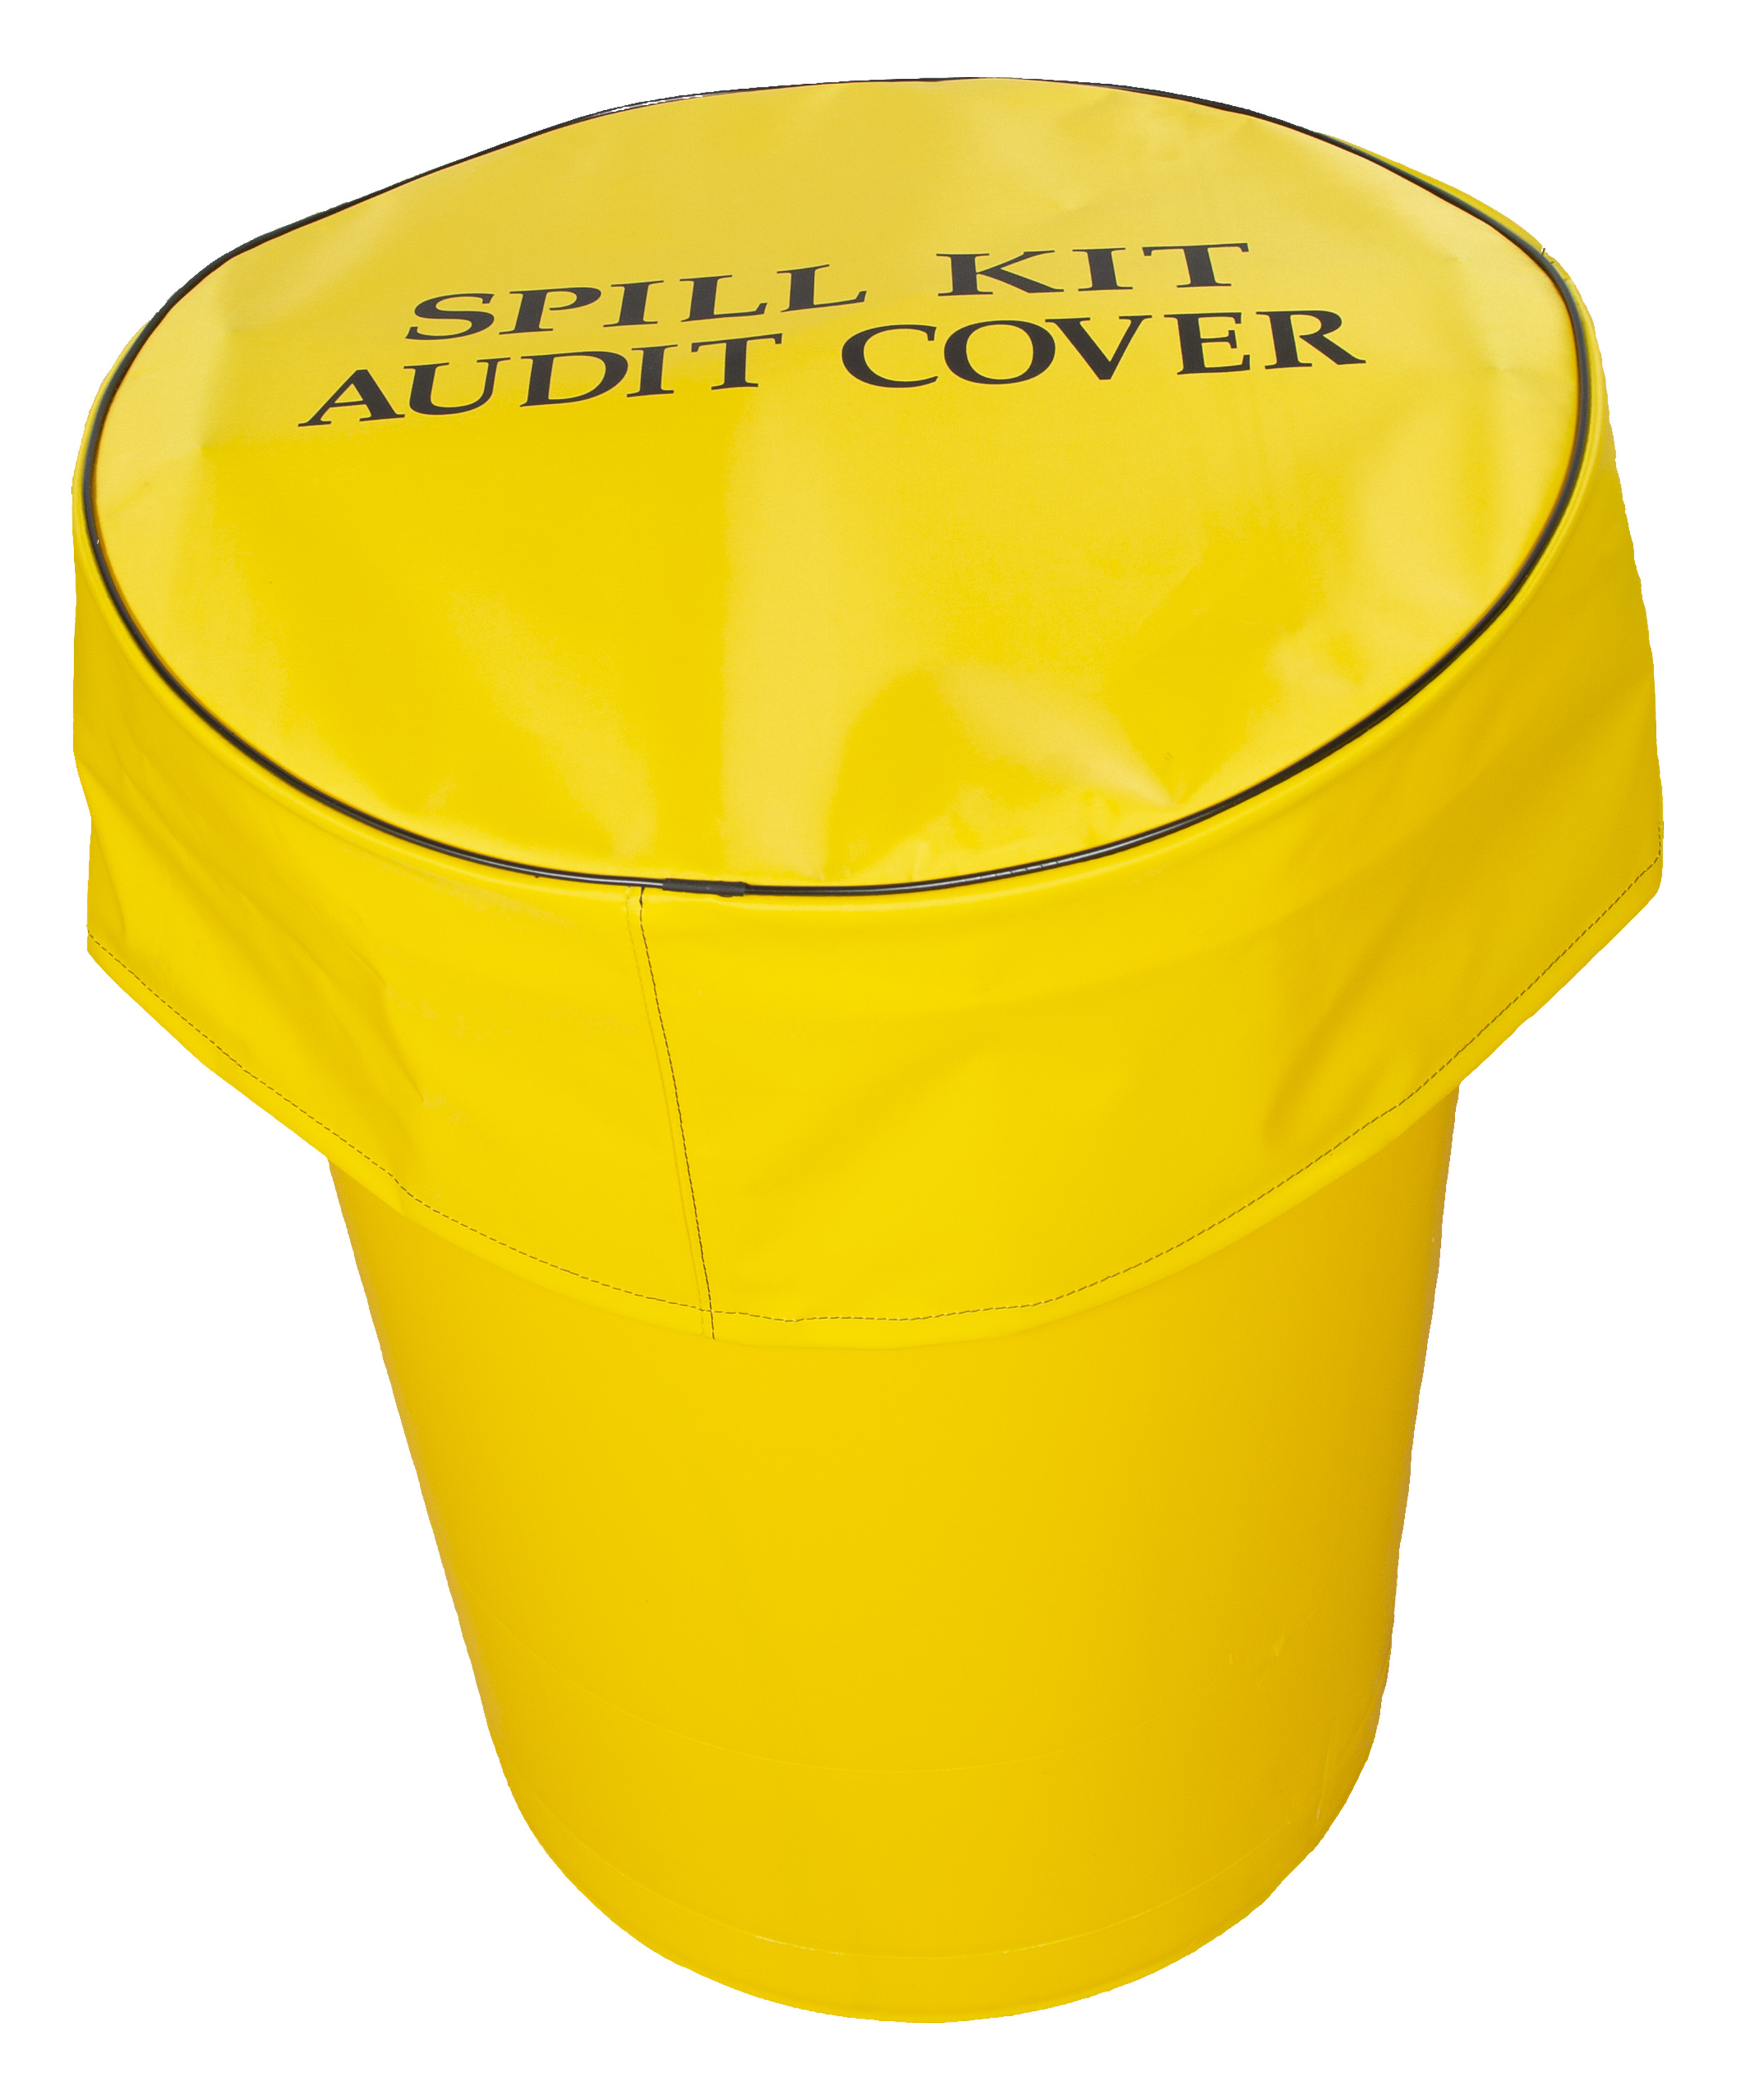 Audit cover for 90L Spill Kit